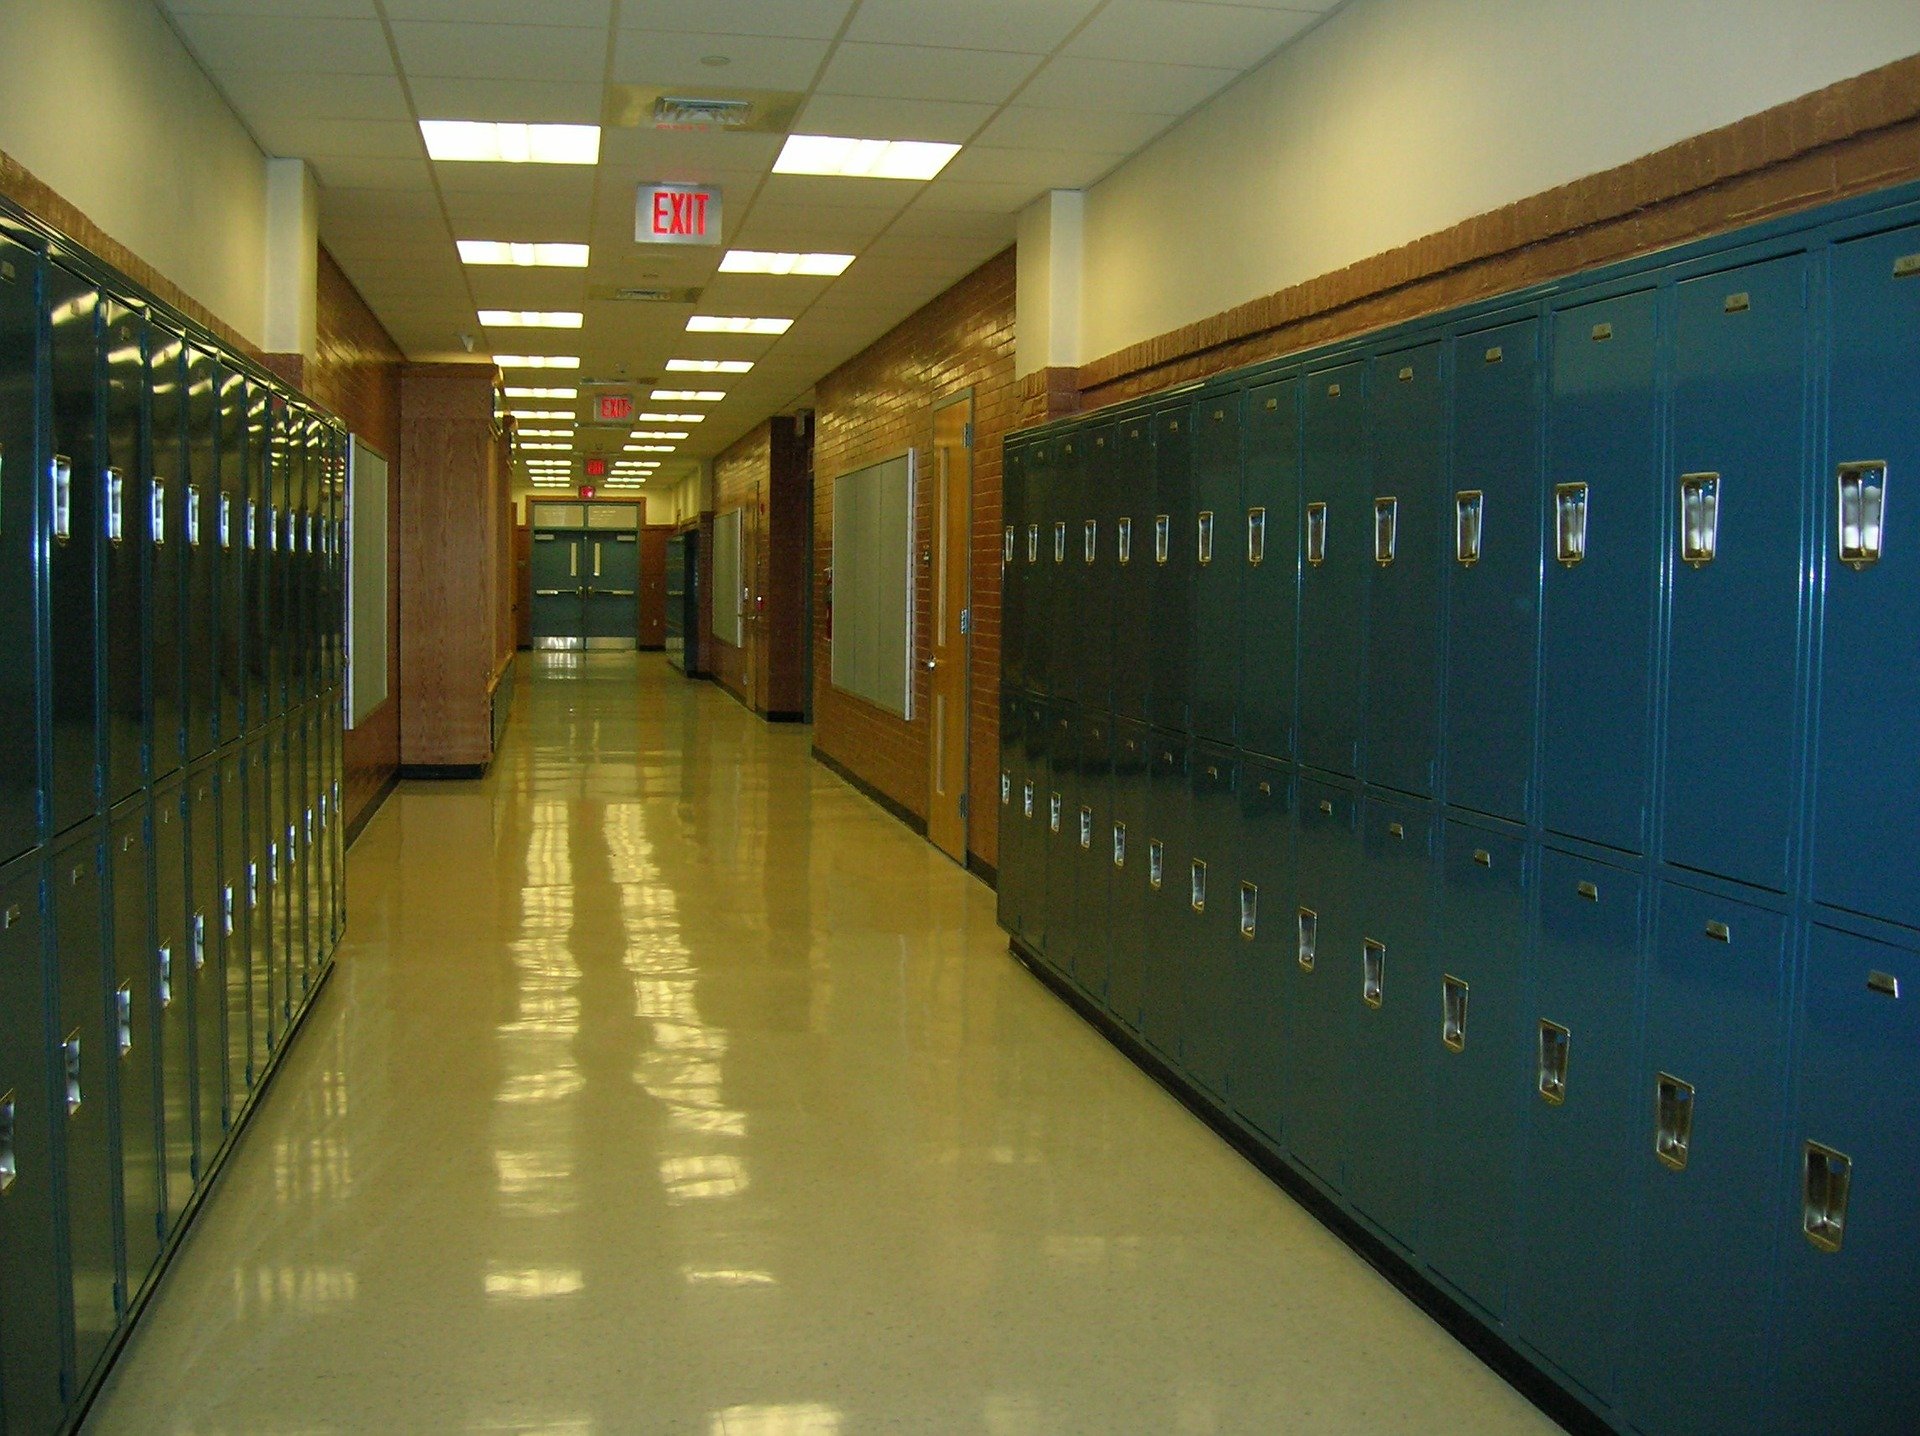 School lockers hallway | Source: Pixabay